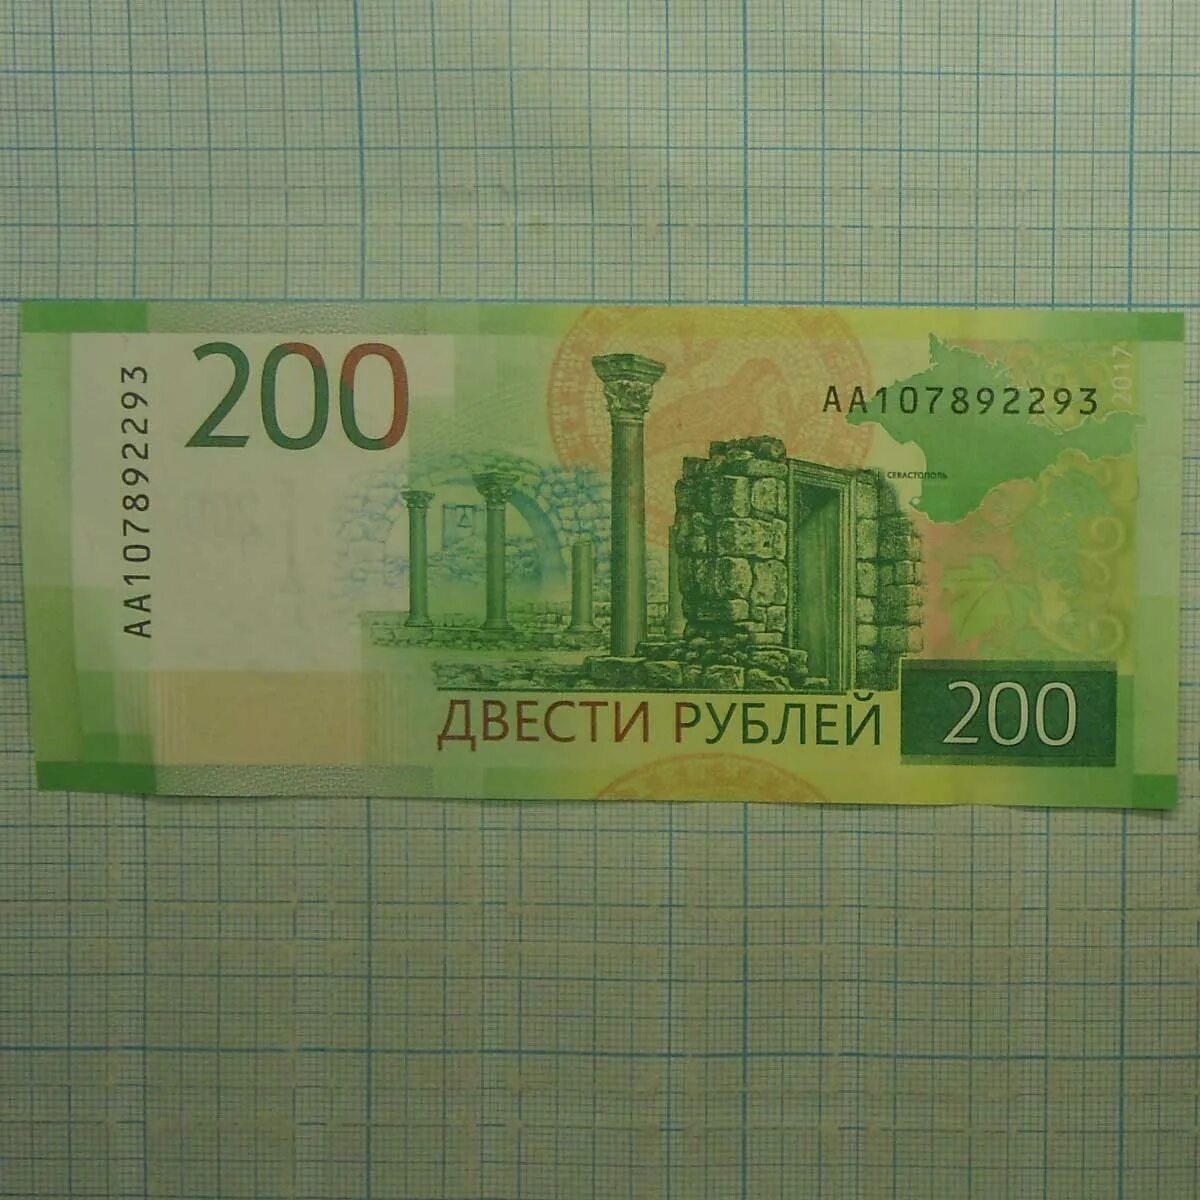 12 200 в рубли. 200 Рублей. Купюра 200 рублей. 200 Рублей банкнота. 200 Рублей 2017.